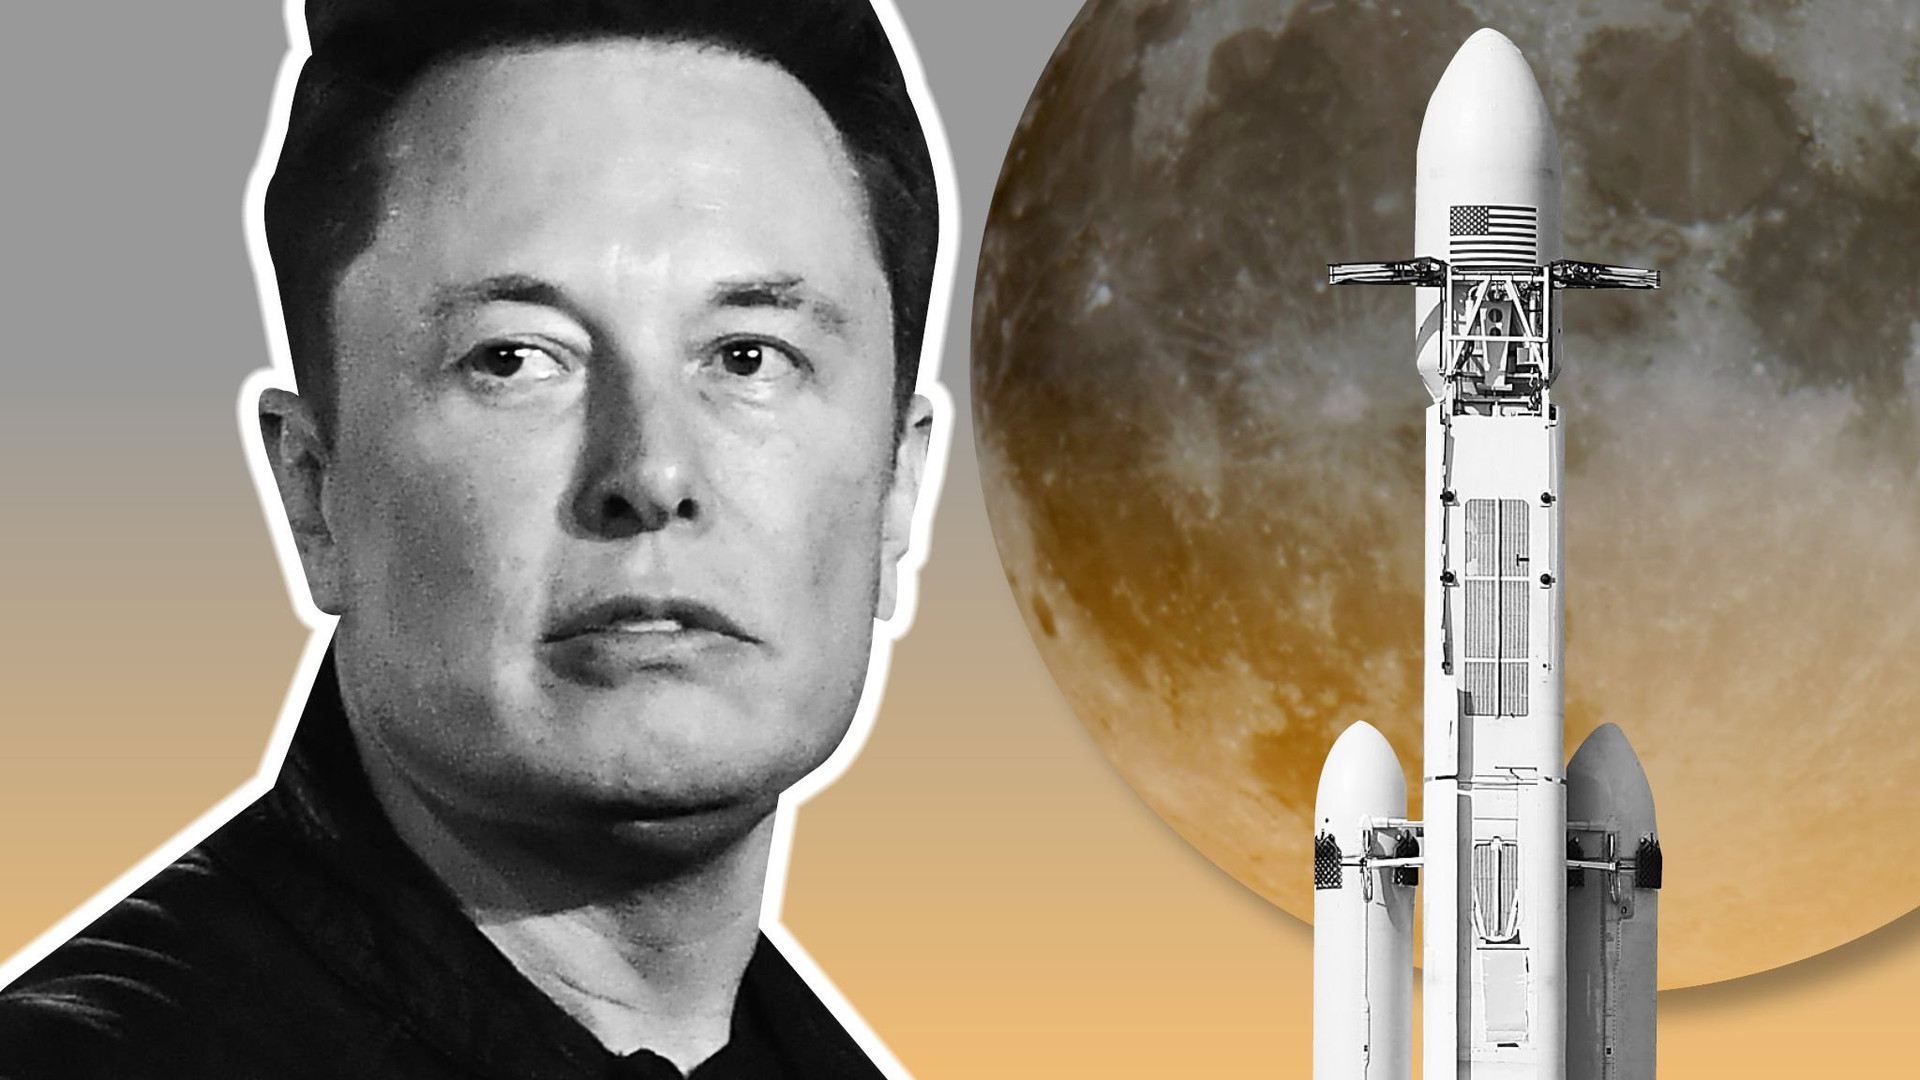 Liều ăn nhiều: SpaceX đã có lãi, tương lai thành 'kẻ thống trị vũ trụ' của Elon Musk không còn xa - Ảnh 3.